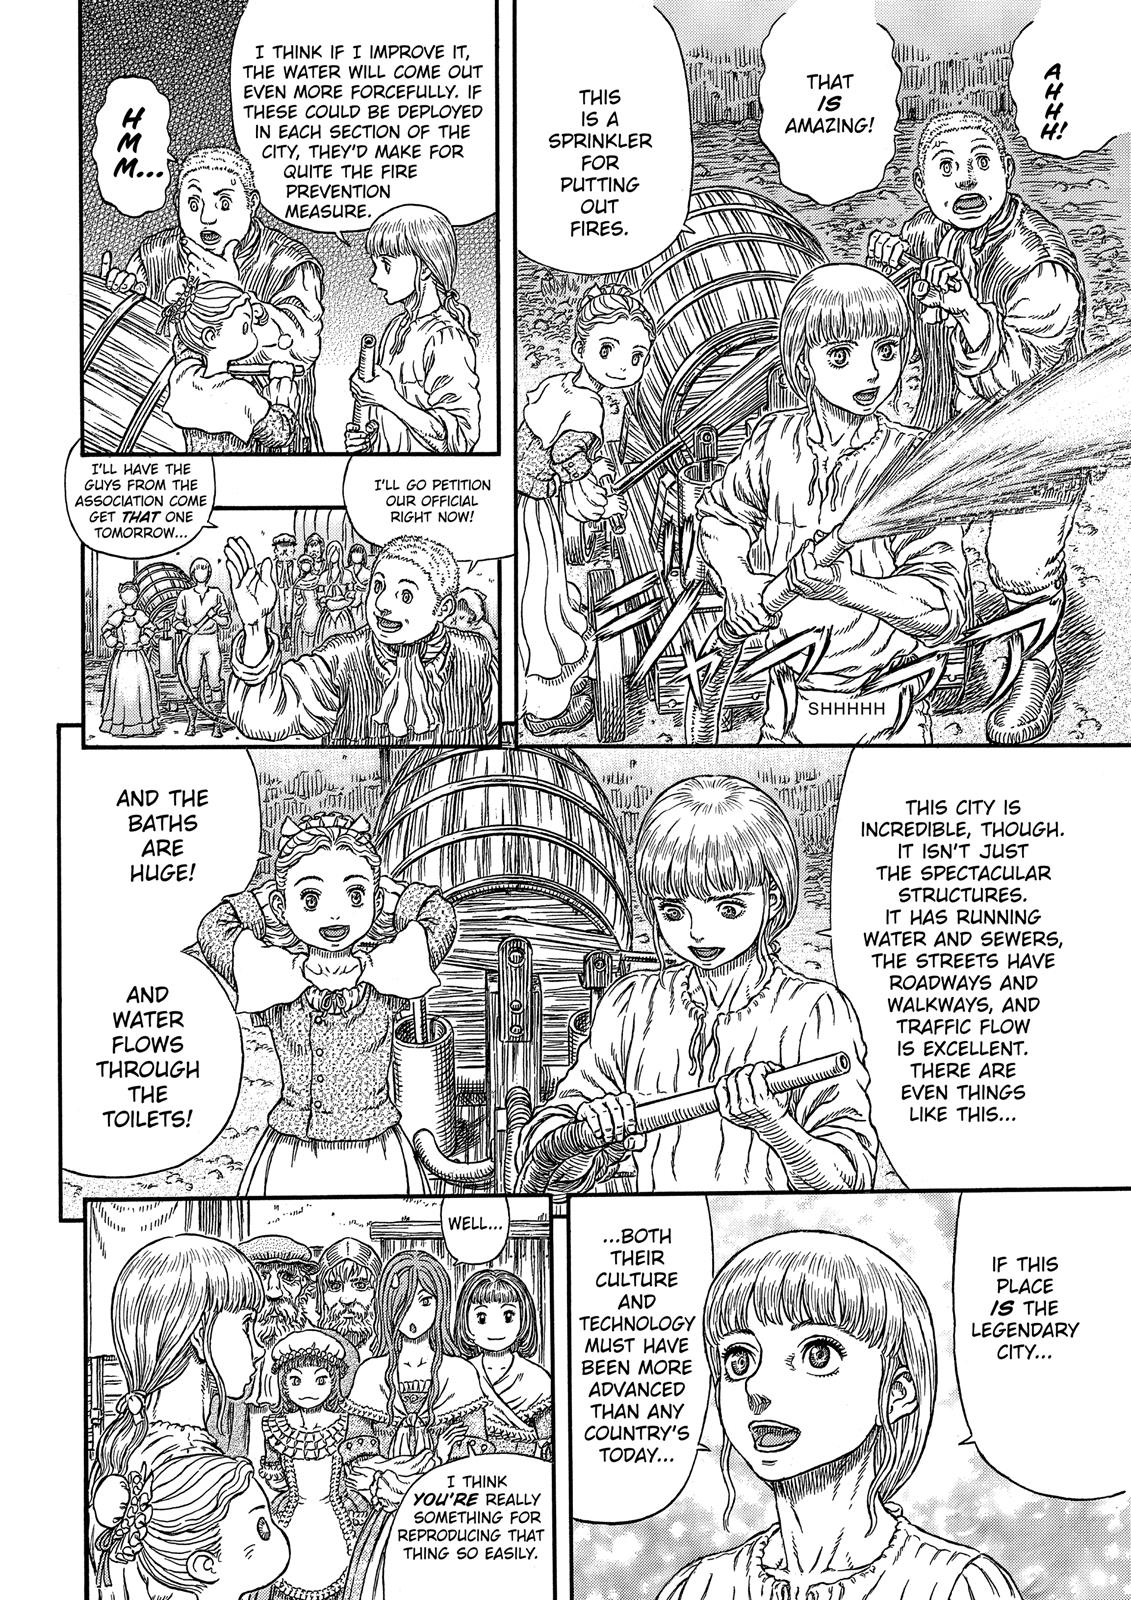 Berserk Manga Chapter 338 image 07